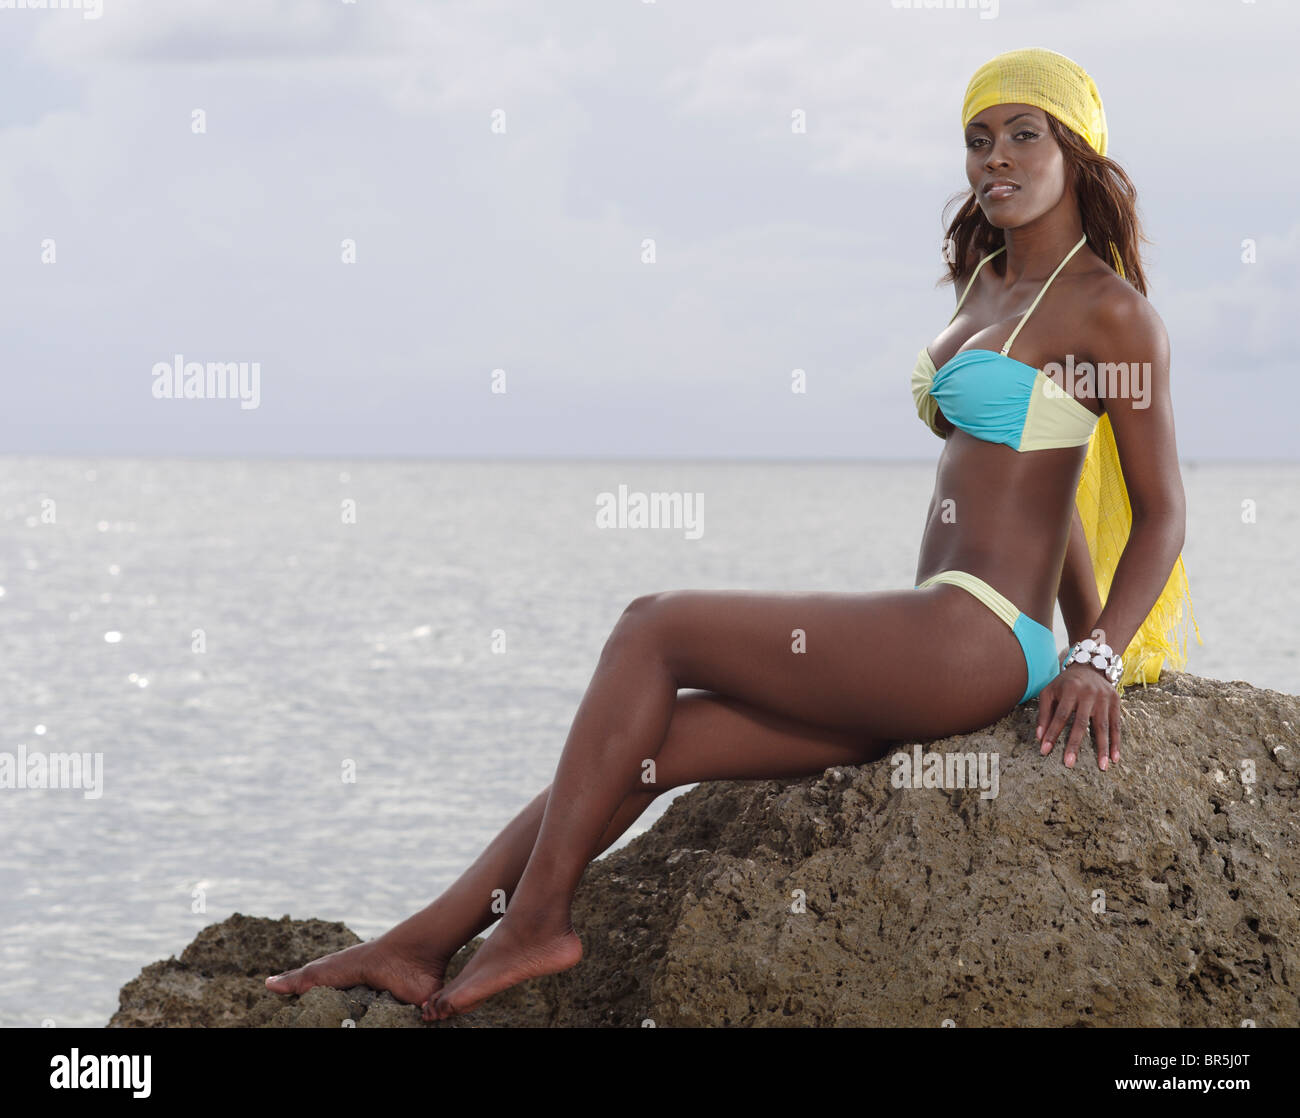 Schöne schwarze Frau im Bikini am Strand Stockfotografie - Alamy